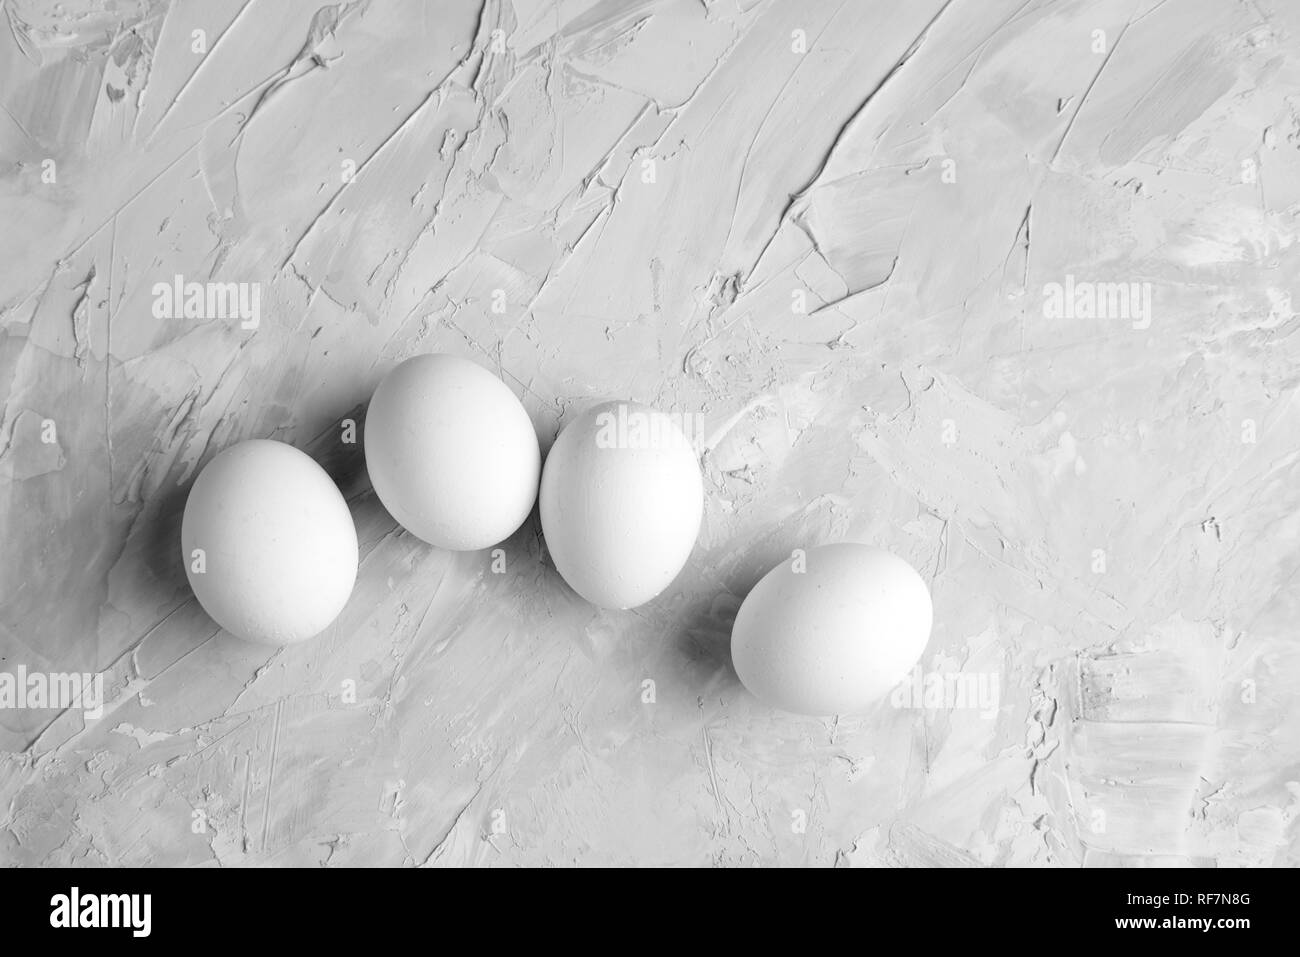 Huhn weiße Eier auf konkrete grauer Hintergrund Draufsicht Geflügel essen Konzept Stockfoto